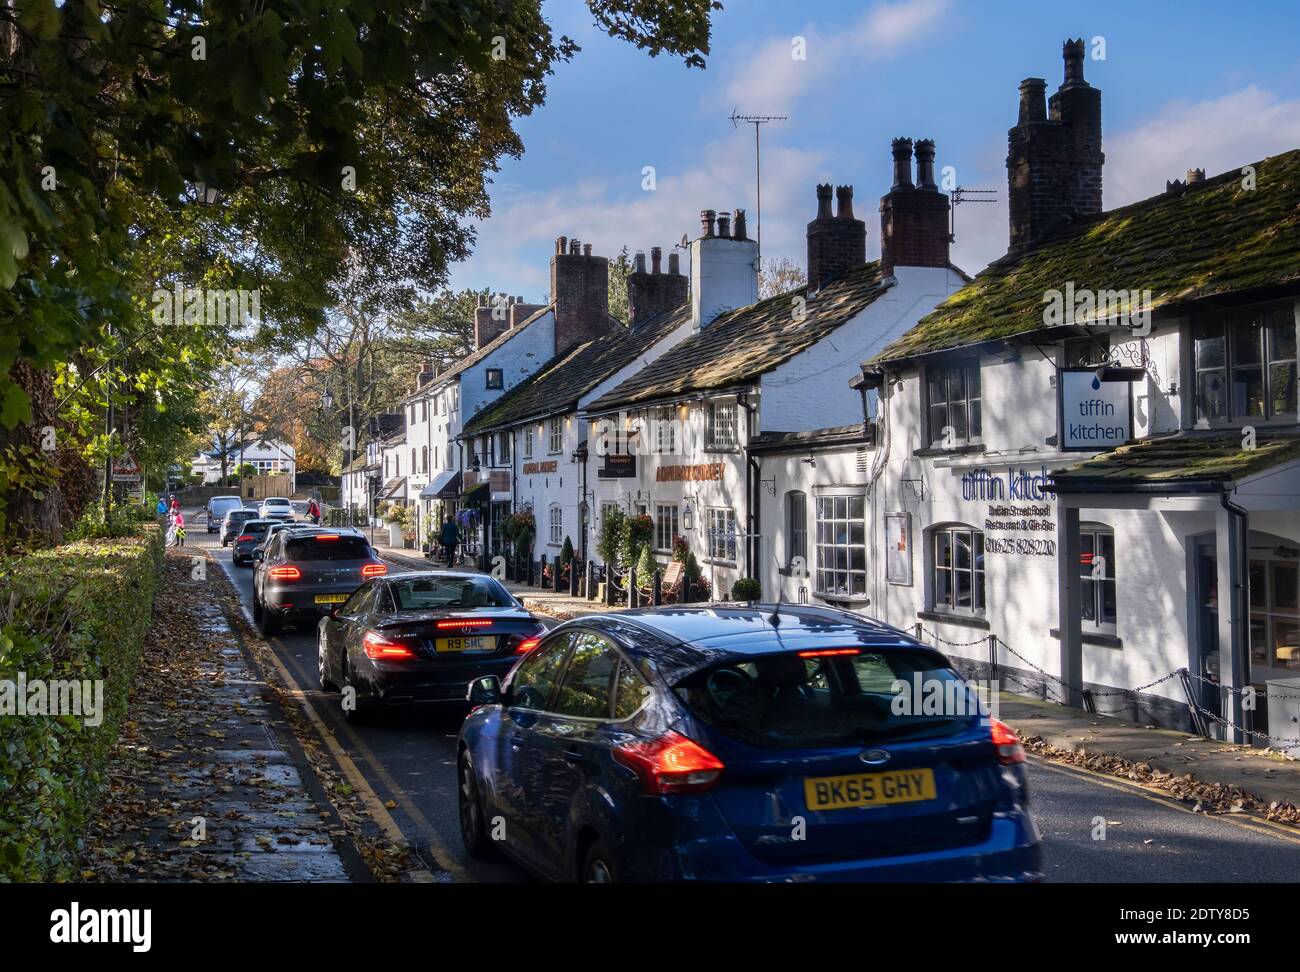 Traffico intenso nel villaggio di Prestbury in autunno, Prestbury, Cheshire, Inghilterra, Regno Unito Foto Stock